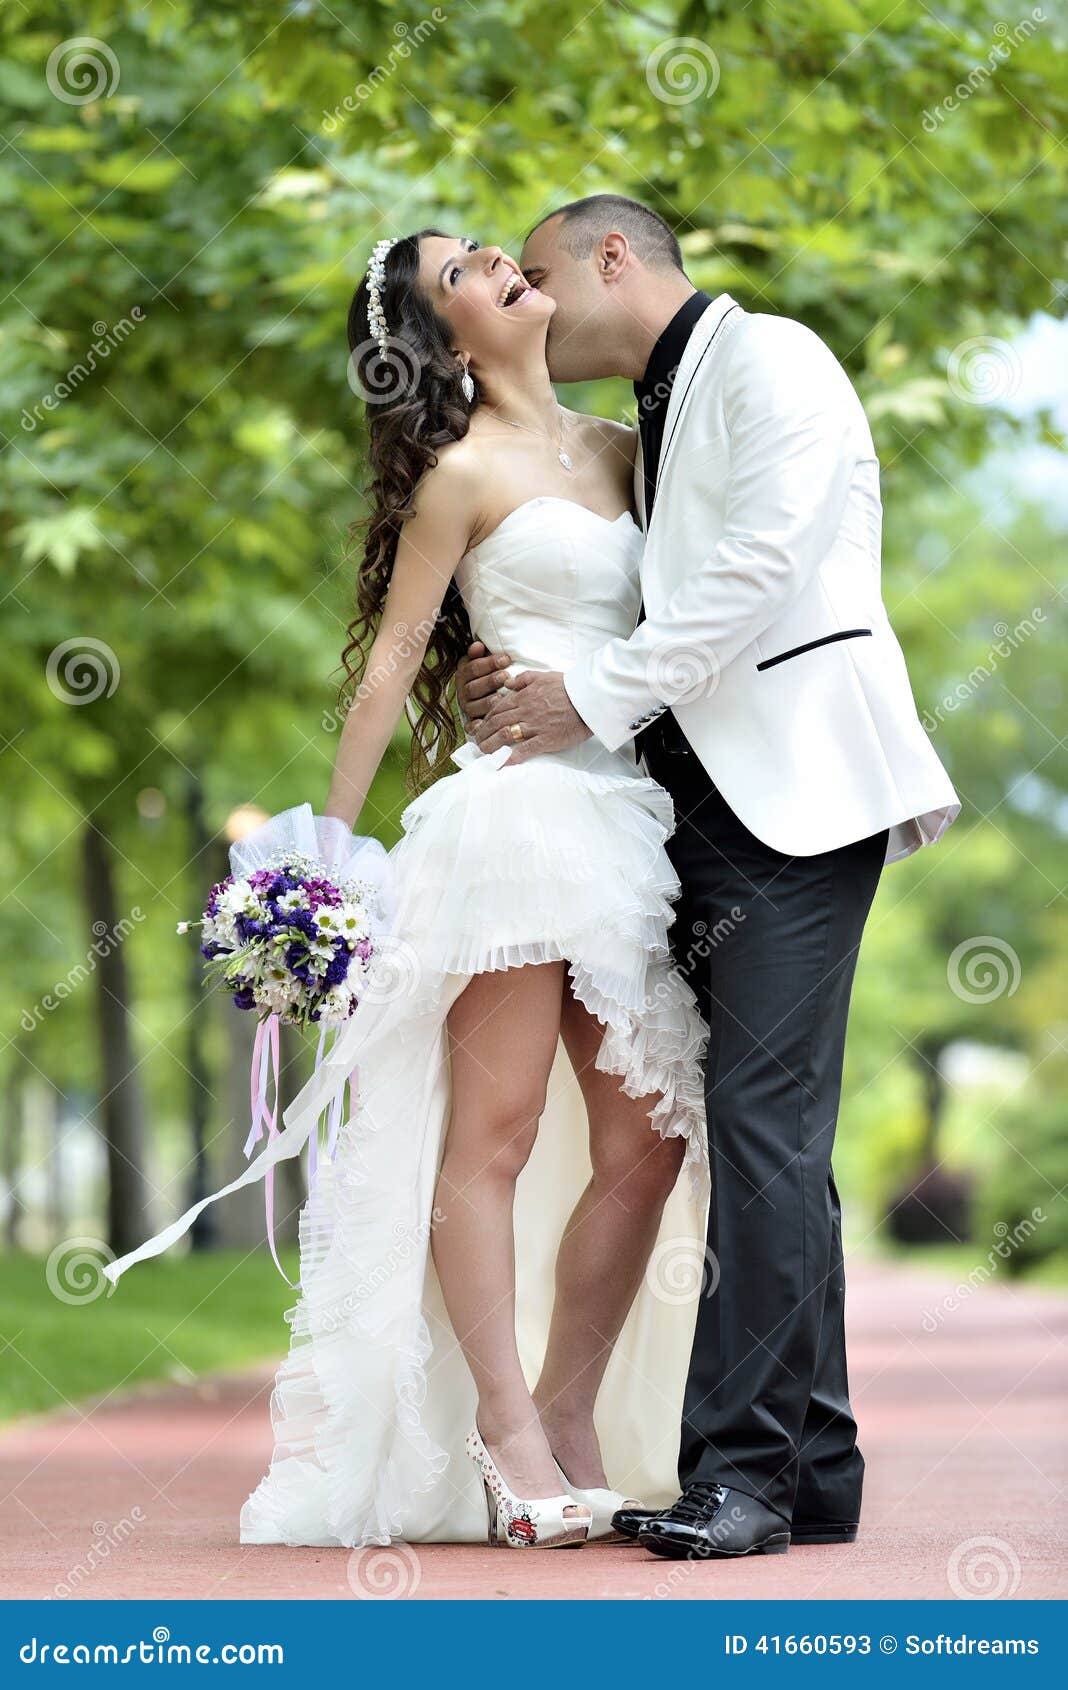 婚礼 鲜花 新娘新郎结婚服装礼服 亲嘴接吻 摄影图片_4K背景图片高清壁纸_墨鱼部落格